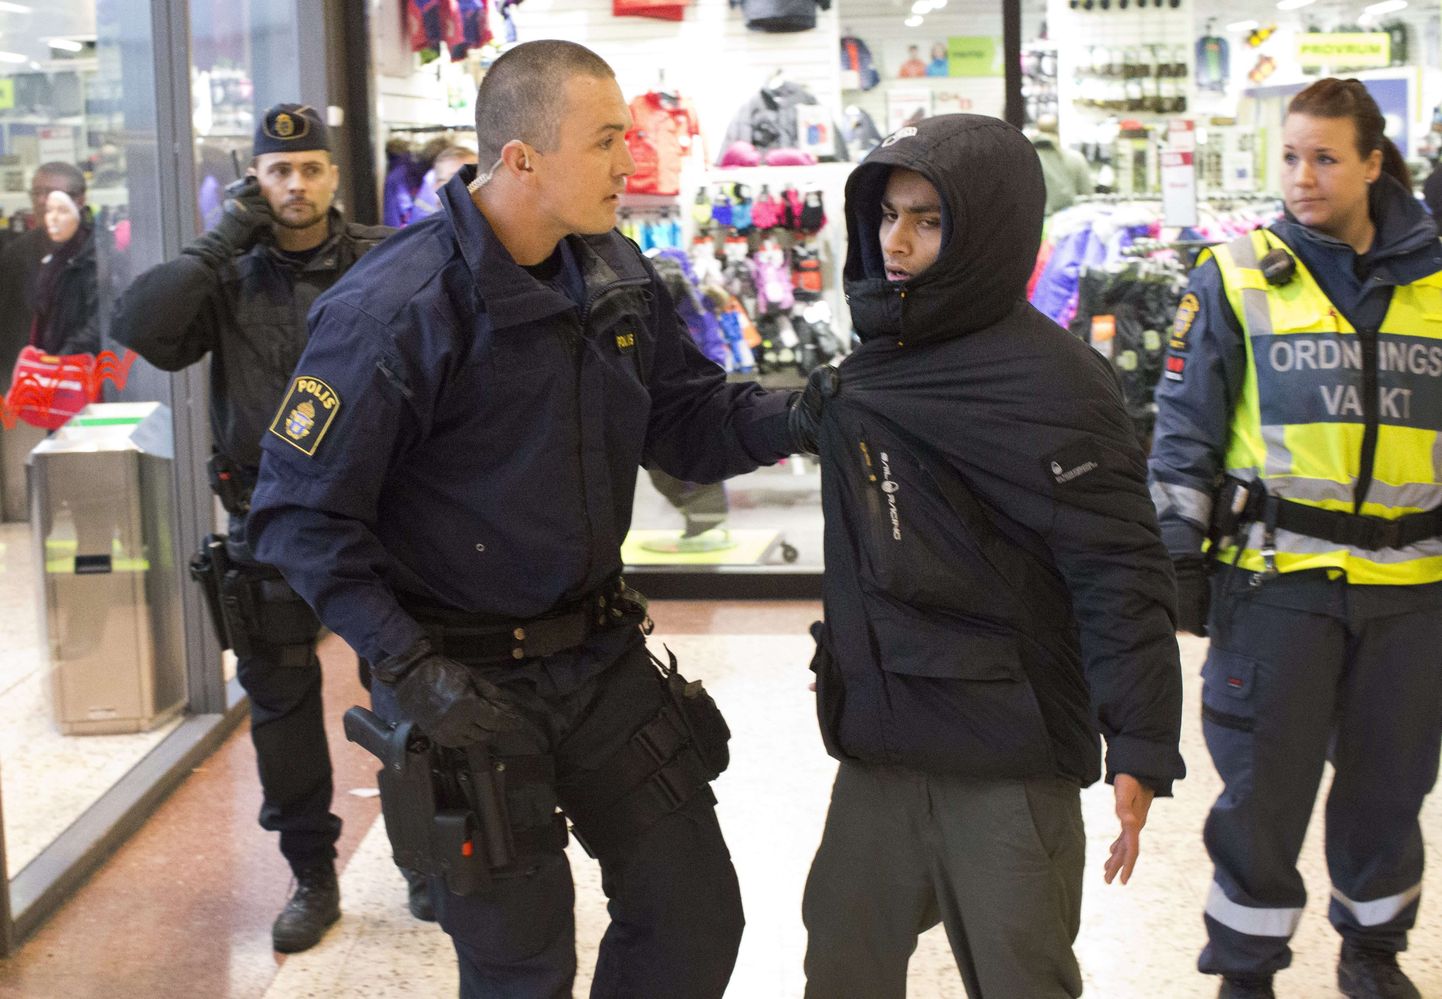 Rootsi politsei kurjategijat kinni võtmas